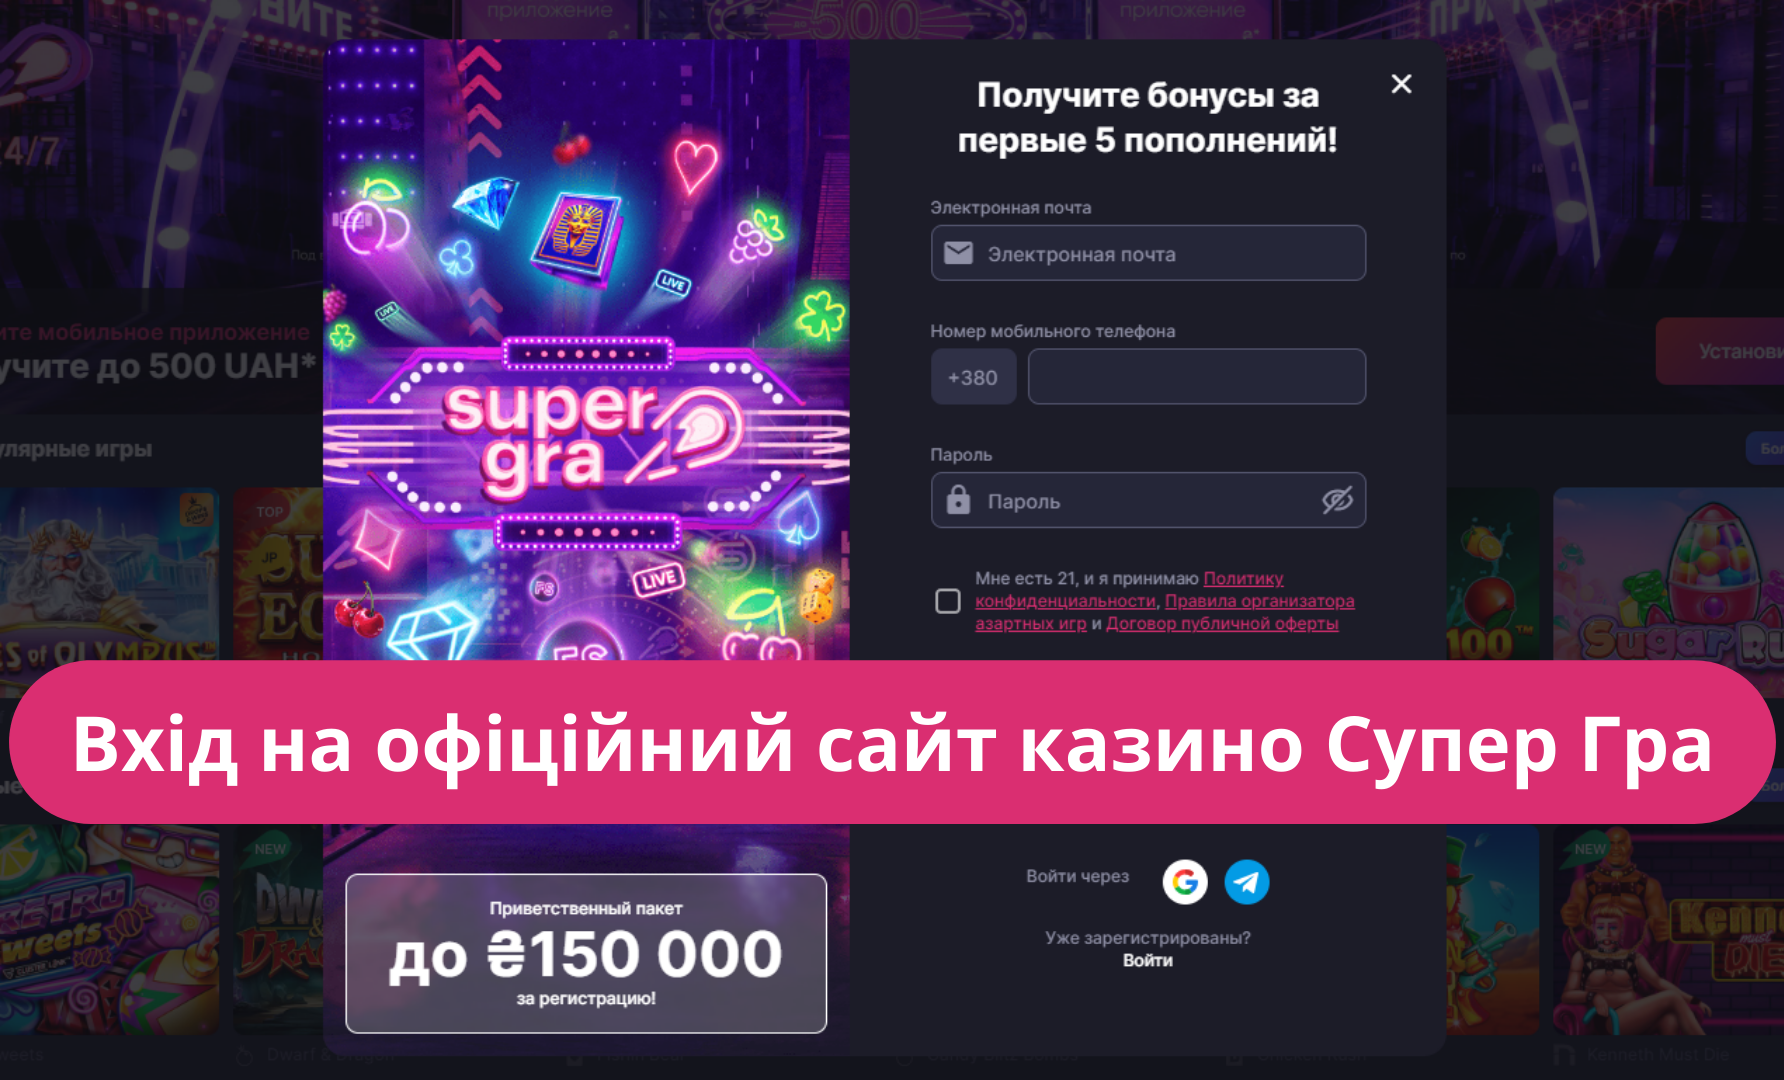 Вхід на офіційний сайт казино Супер Гра